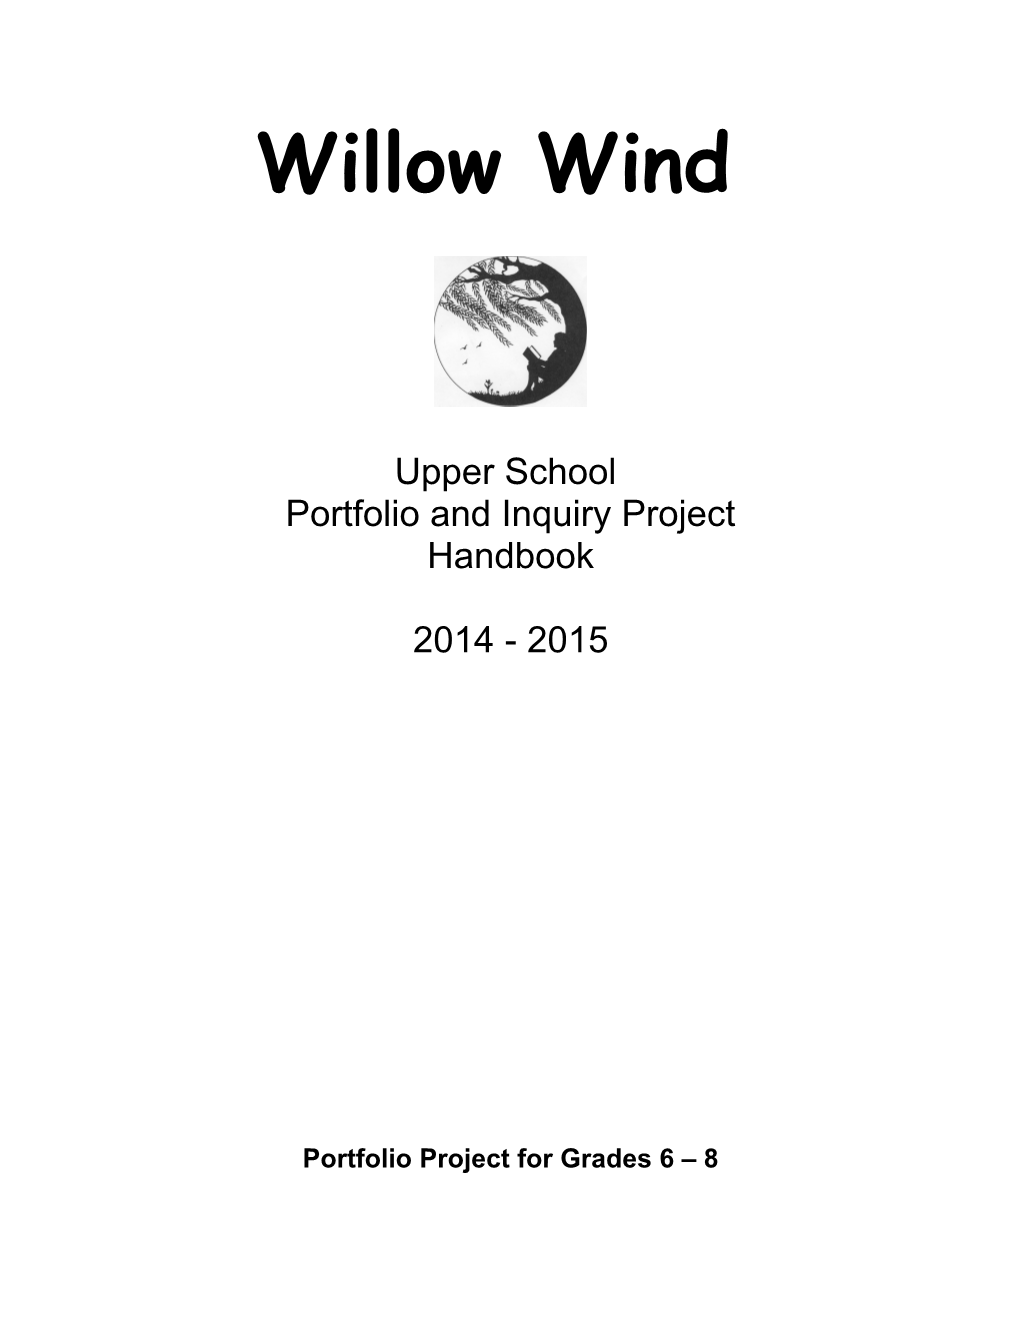 Portfolio Project for Grades 6 8